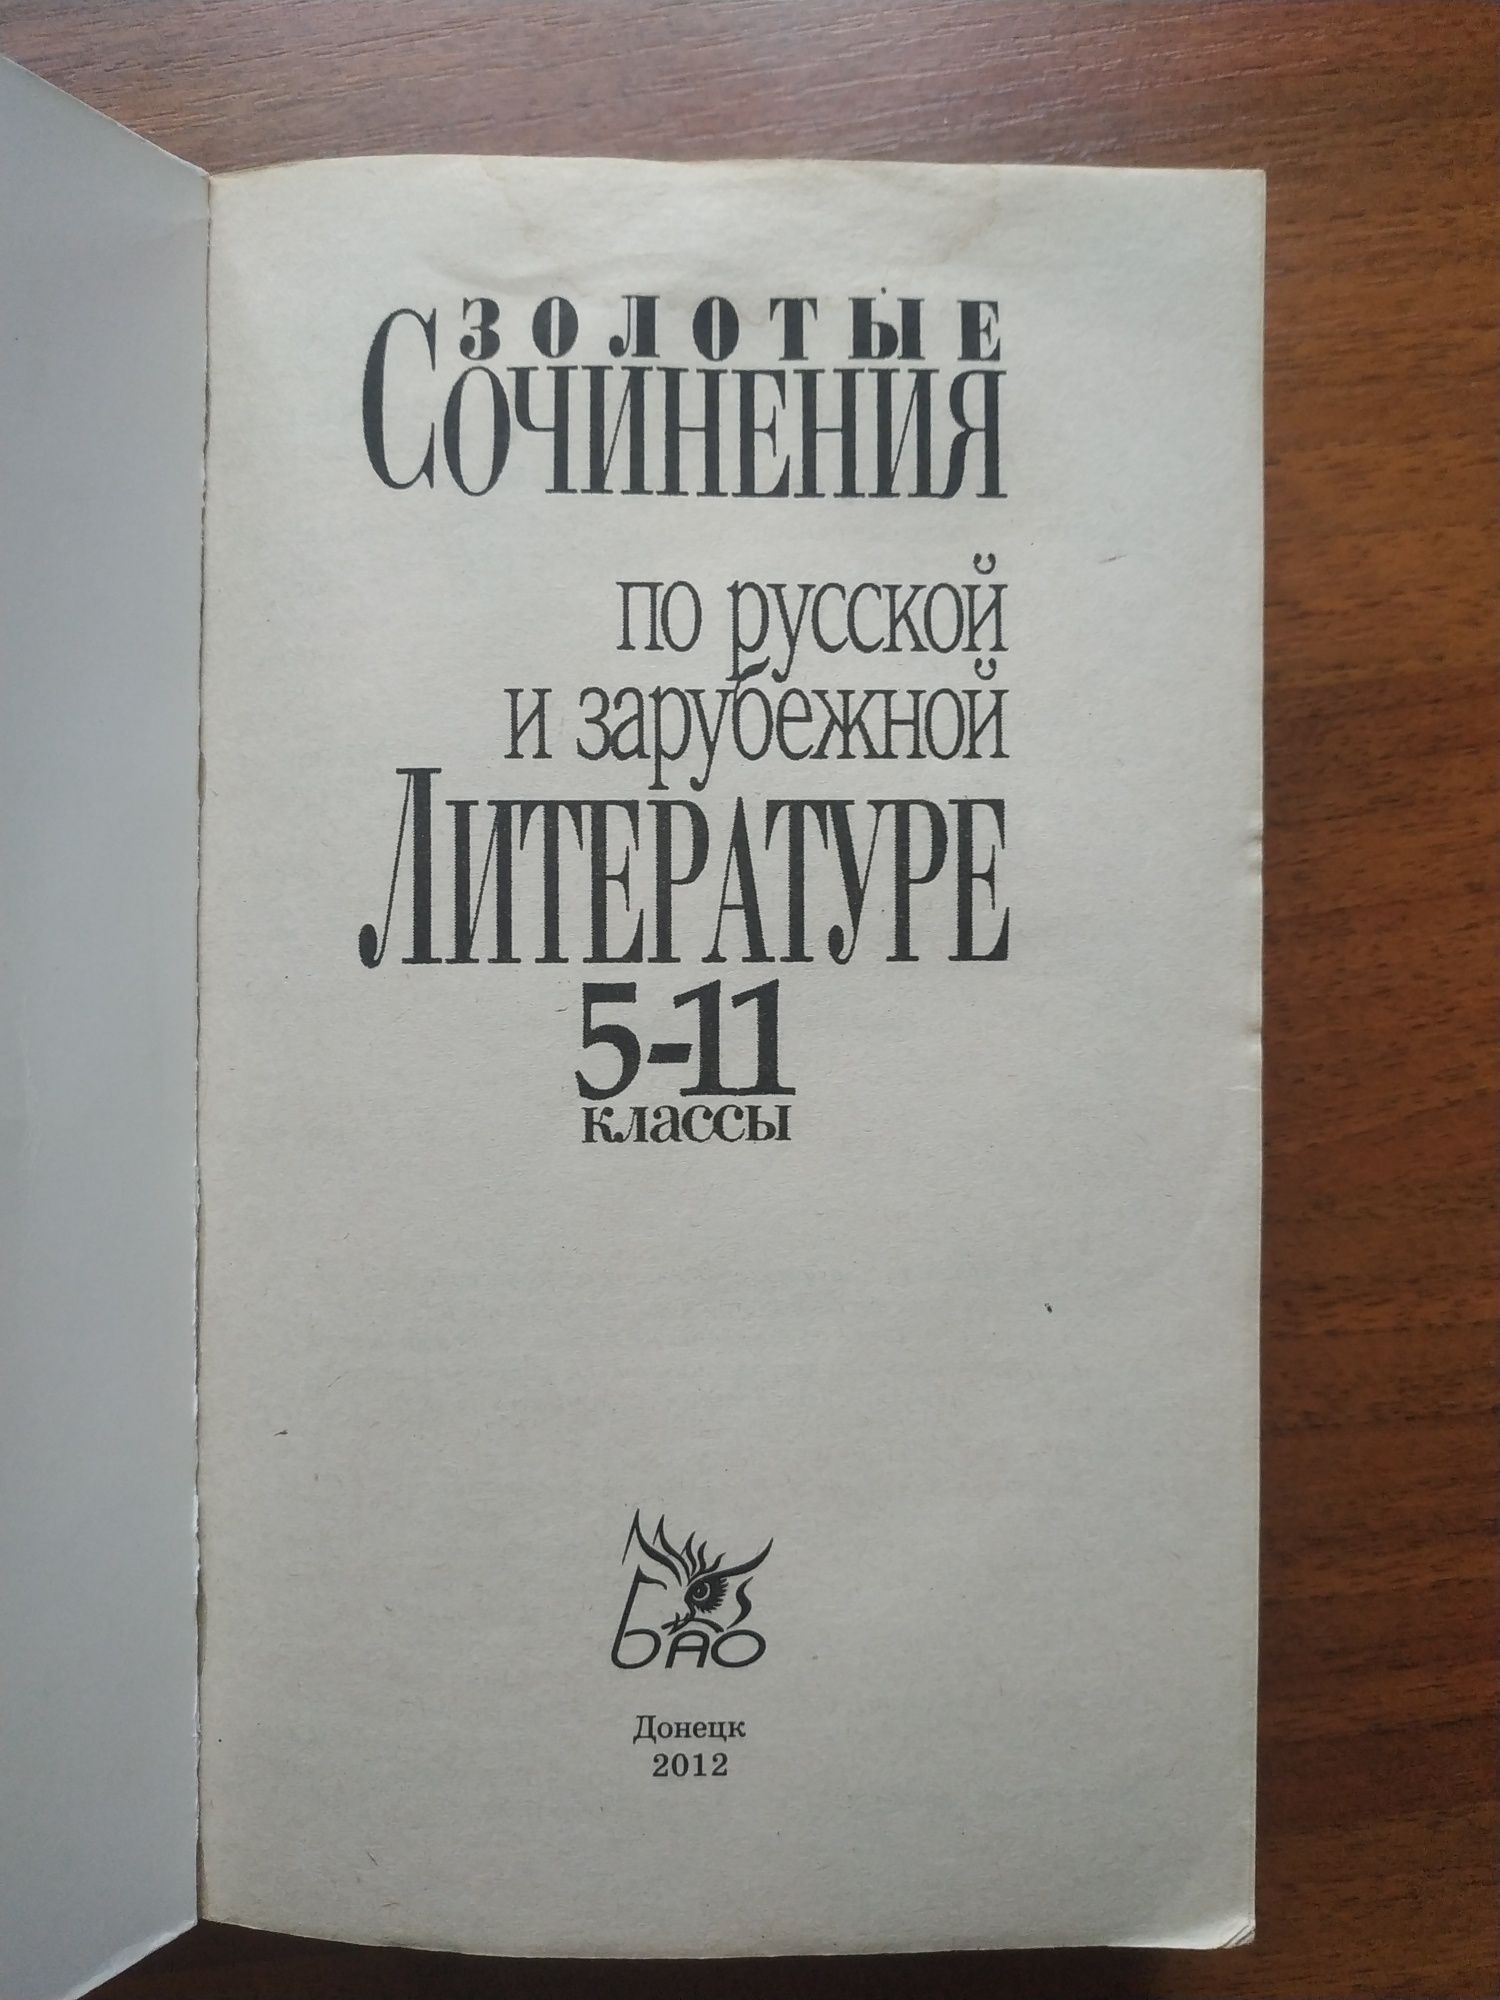 Сочинения по русской и зарубежной литературе 5-11 класс